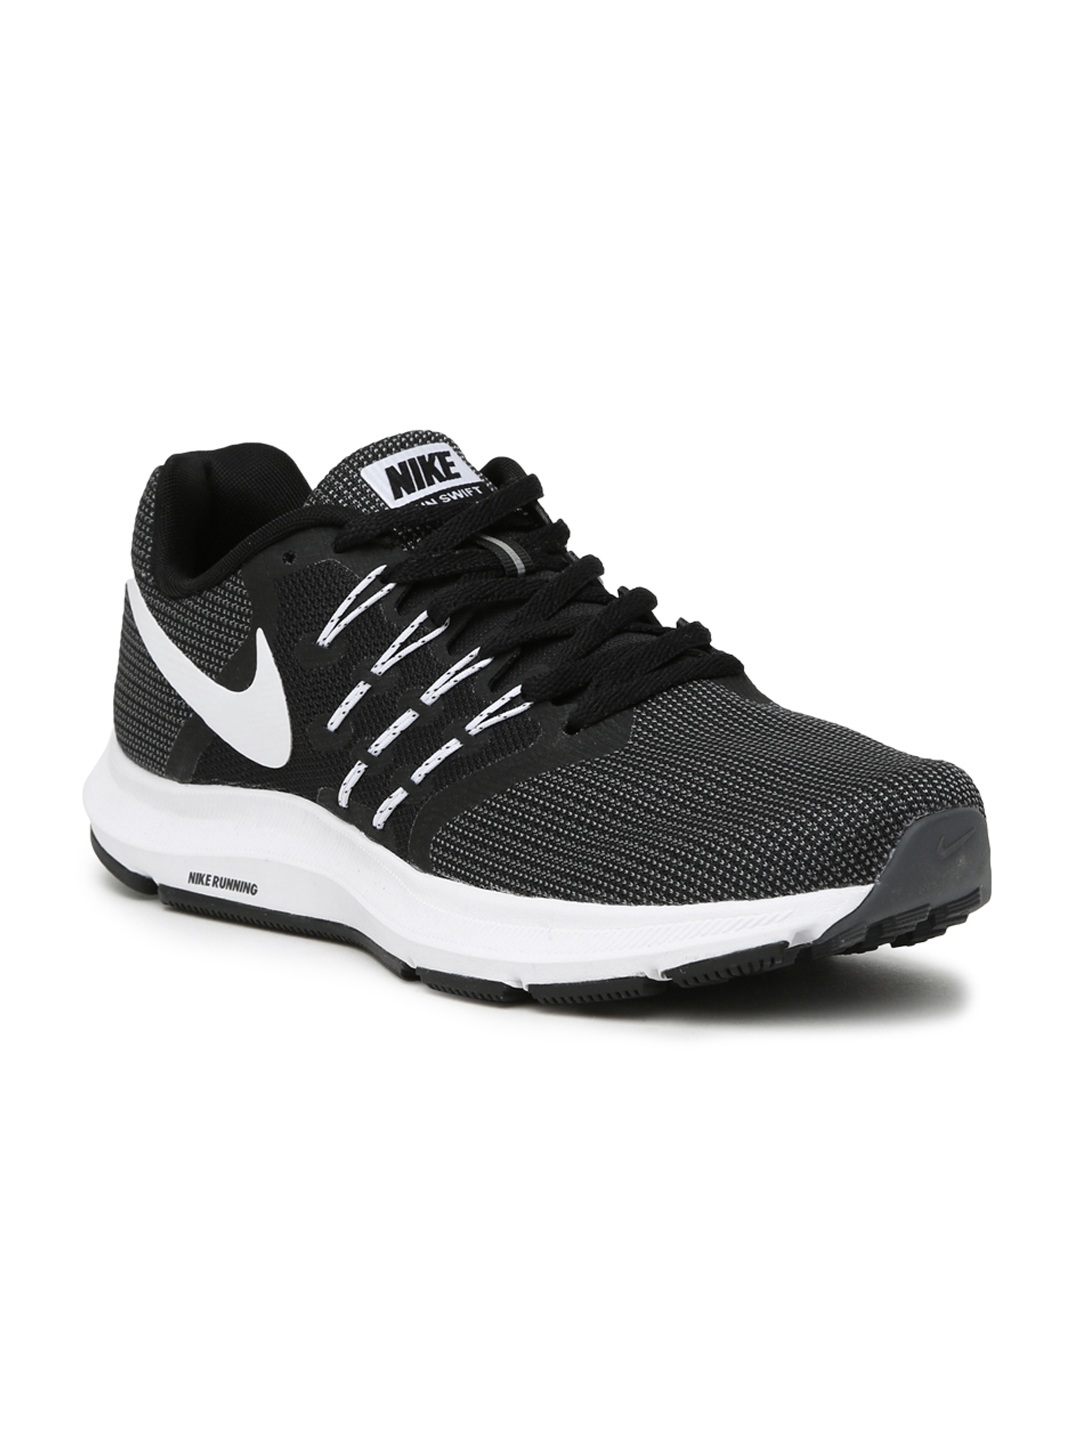 Buy Nike Men Black & Charcoal Grey RUN SWIFT Running Shoes - Sports Shoes Men 1963122 | Myntra